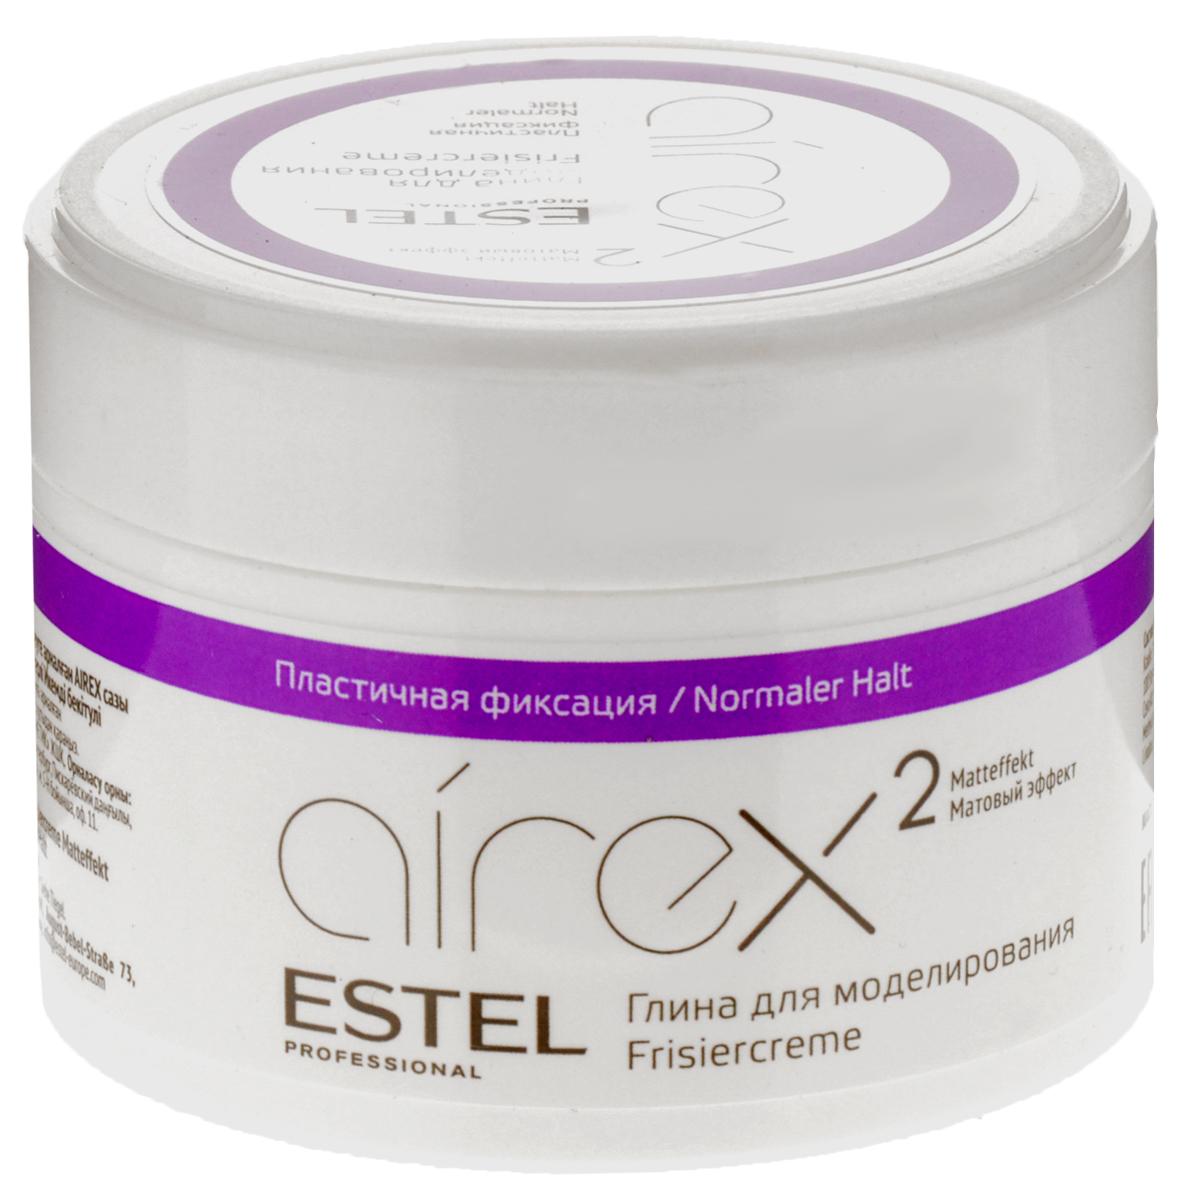 Estel Airex Глина для моделирования с матовым эффектом пластичная фиксация 65 мл